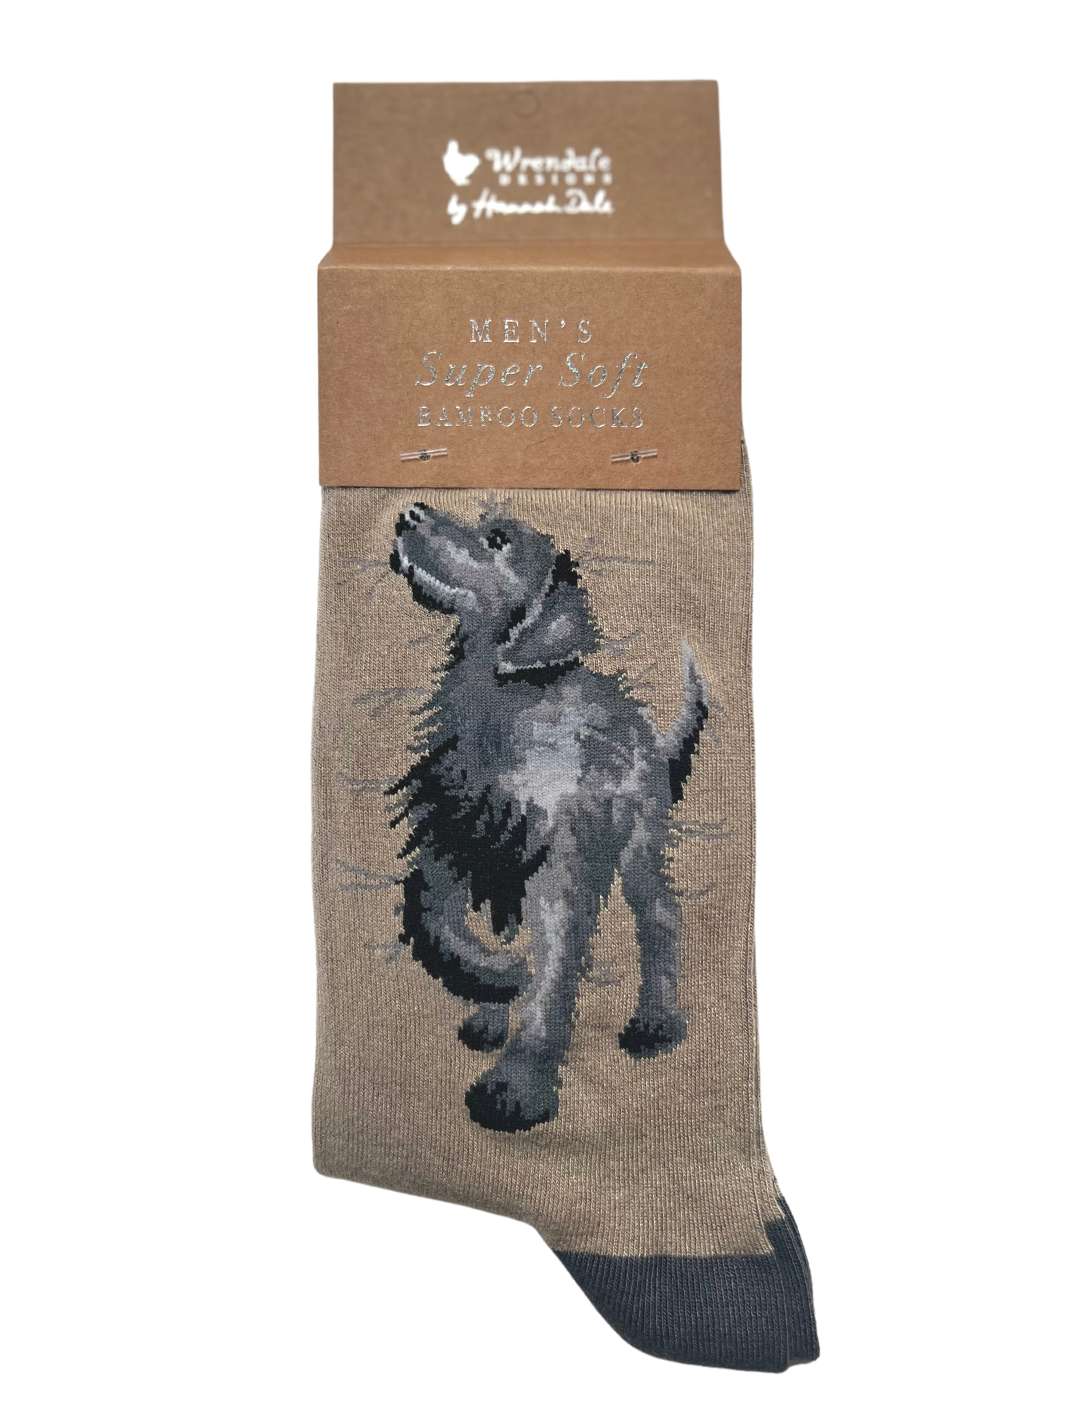 Socken mit Hundemotiv von Wrendale Designs